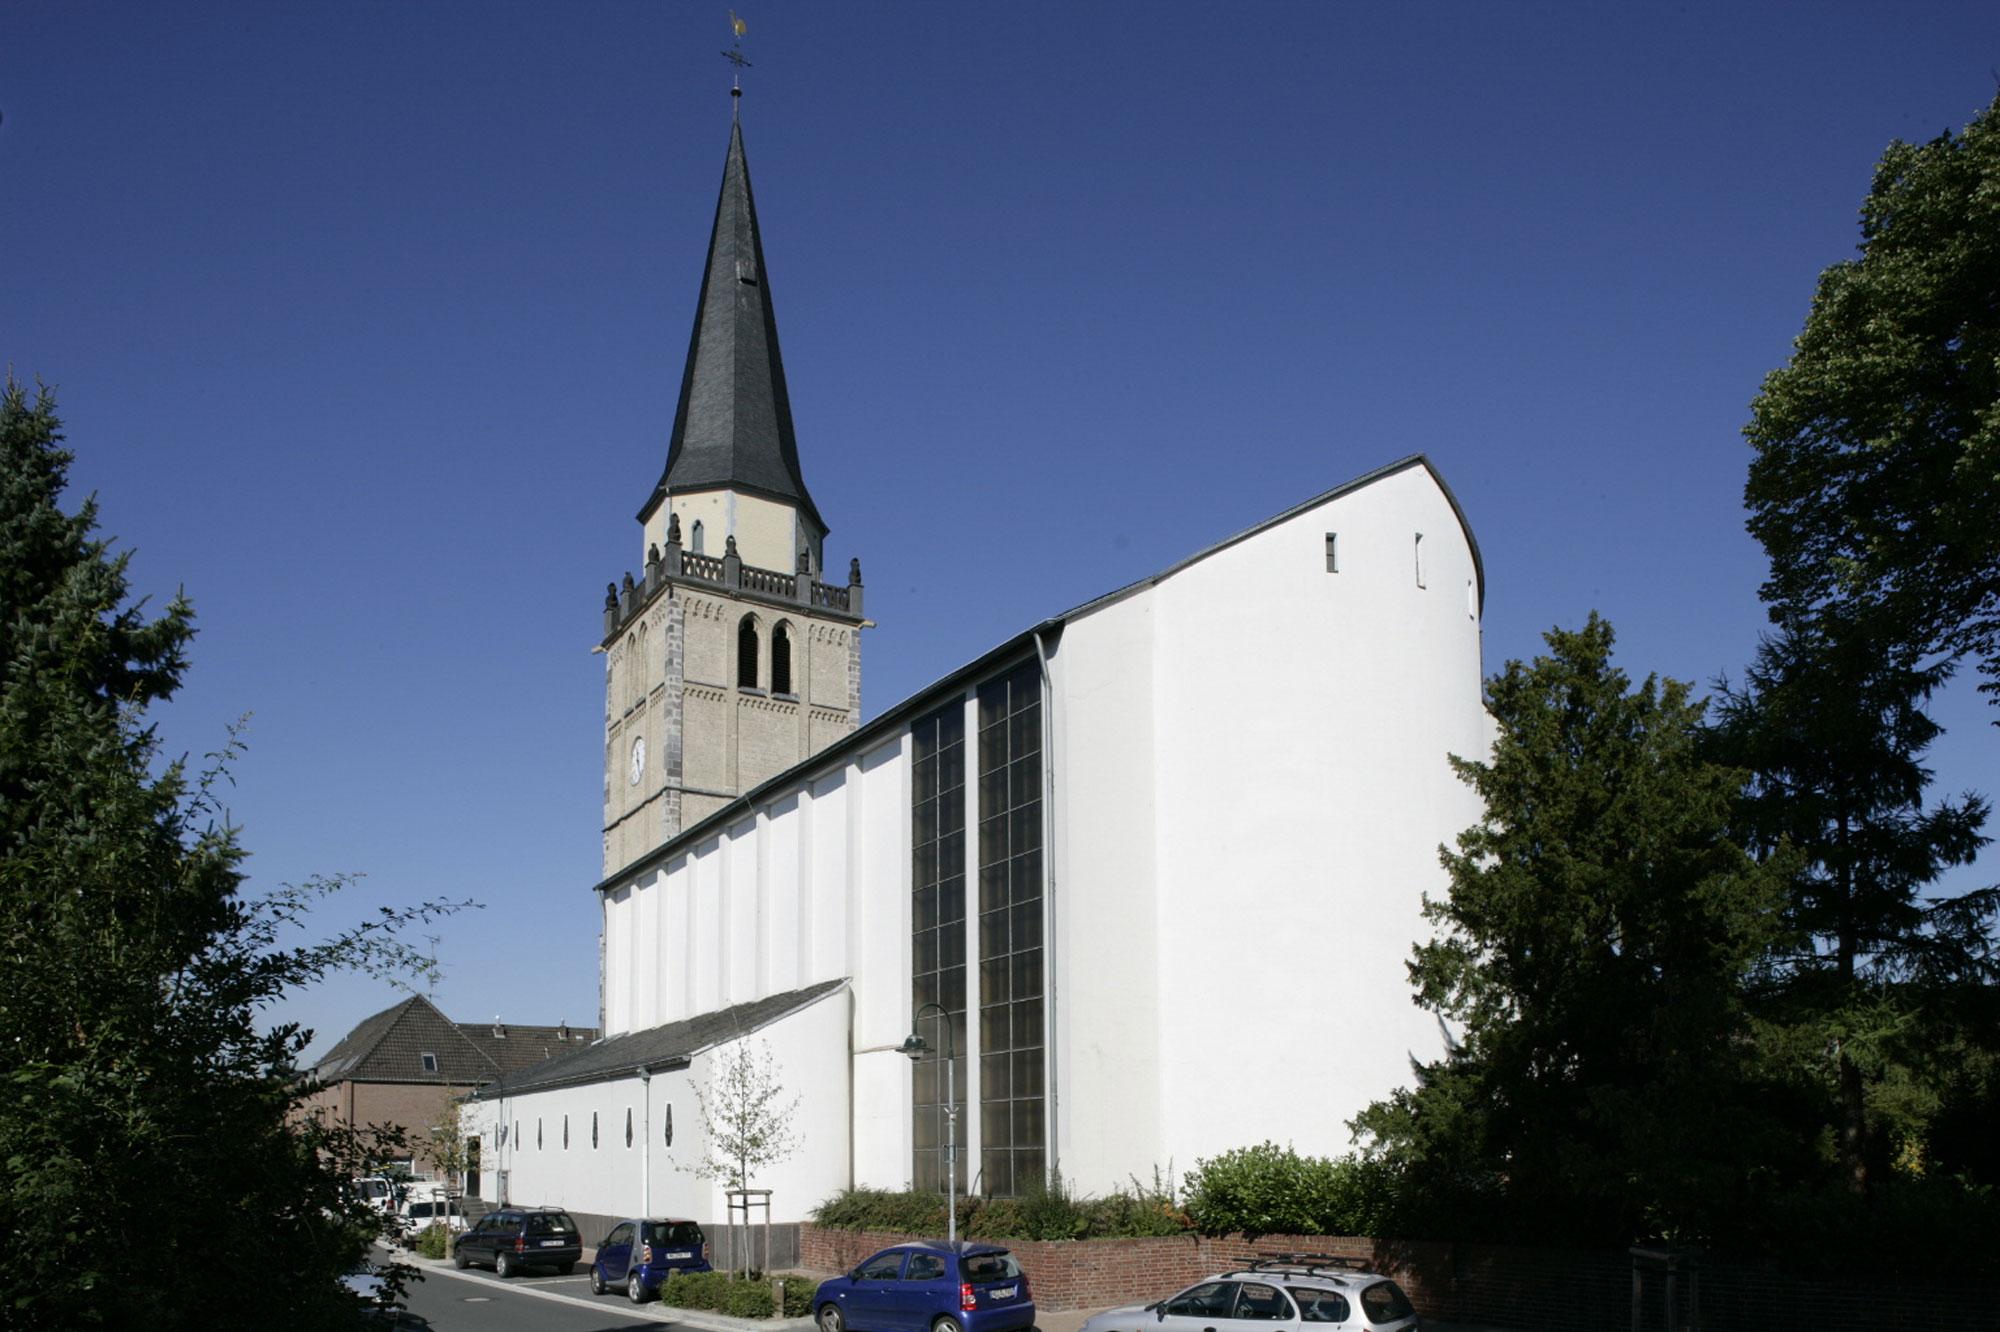 St. Peter Rommerskirchen